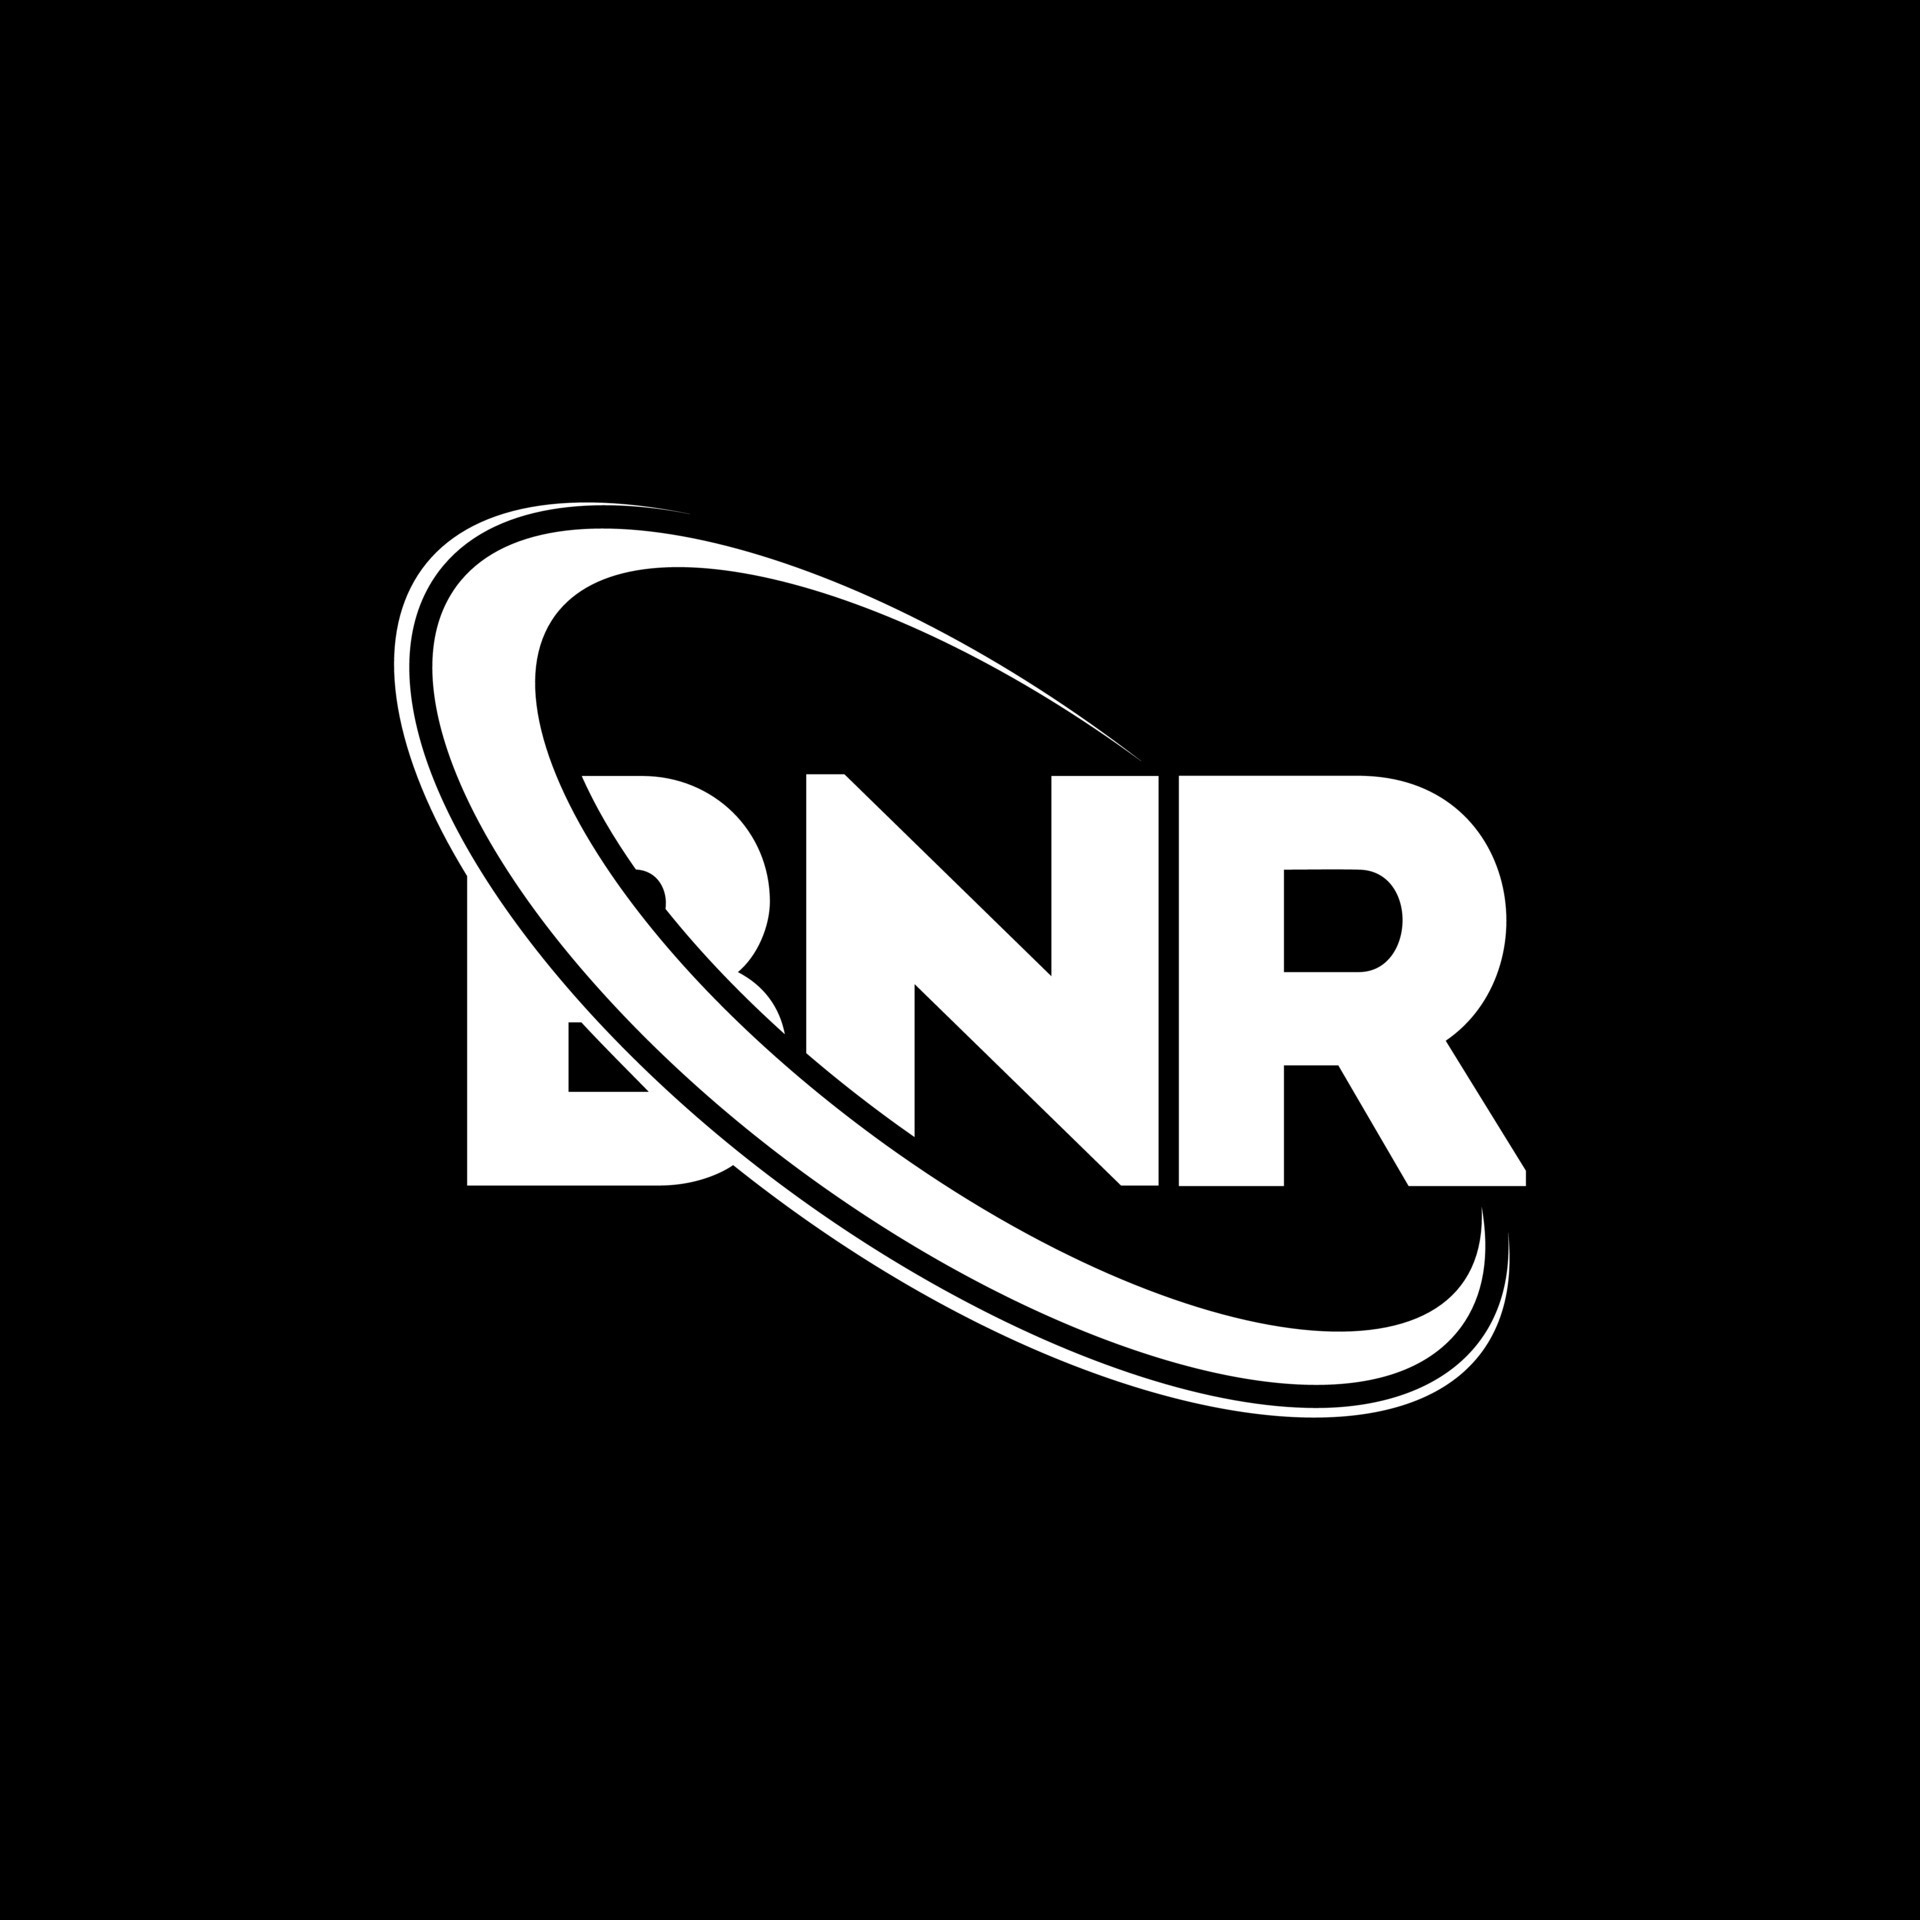 BNR logo. BNR letter. BNR letter logo design. Initials BNR logo